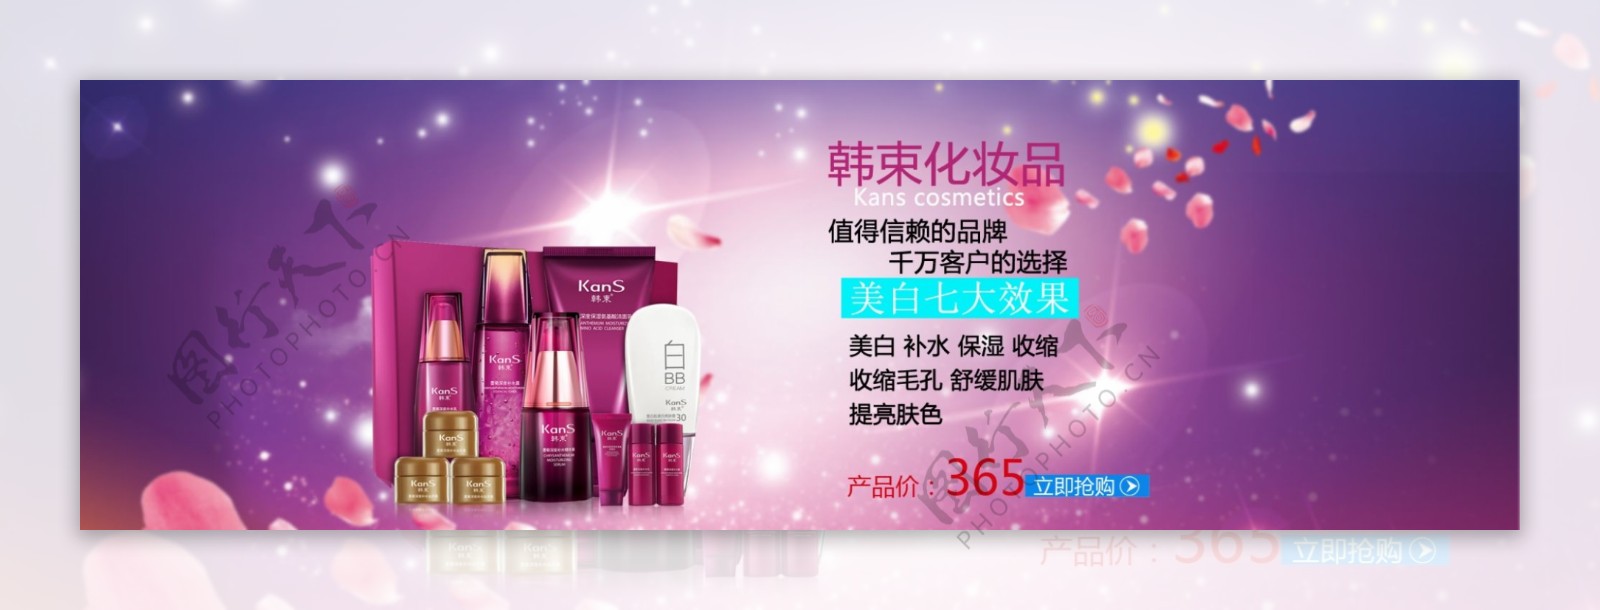 2015淘宝海报天猫海报化妆品海报